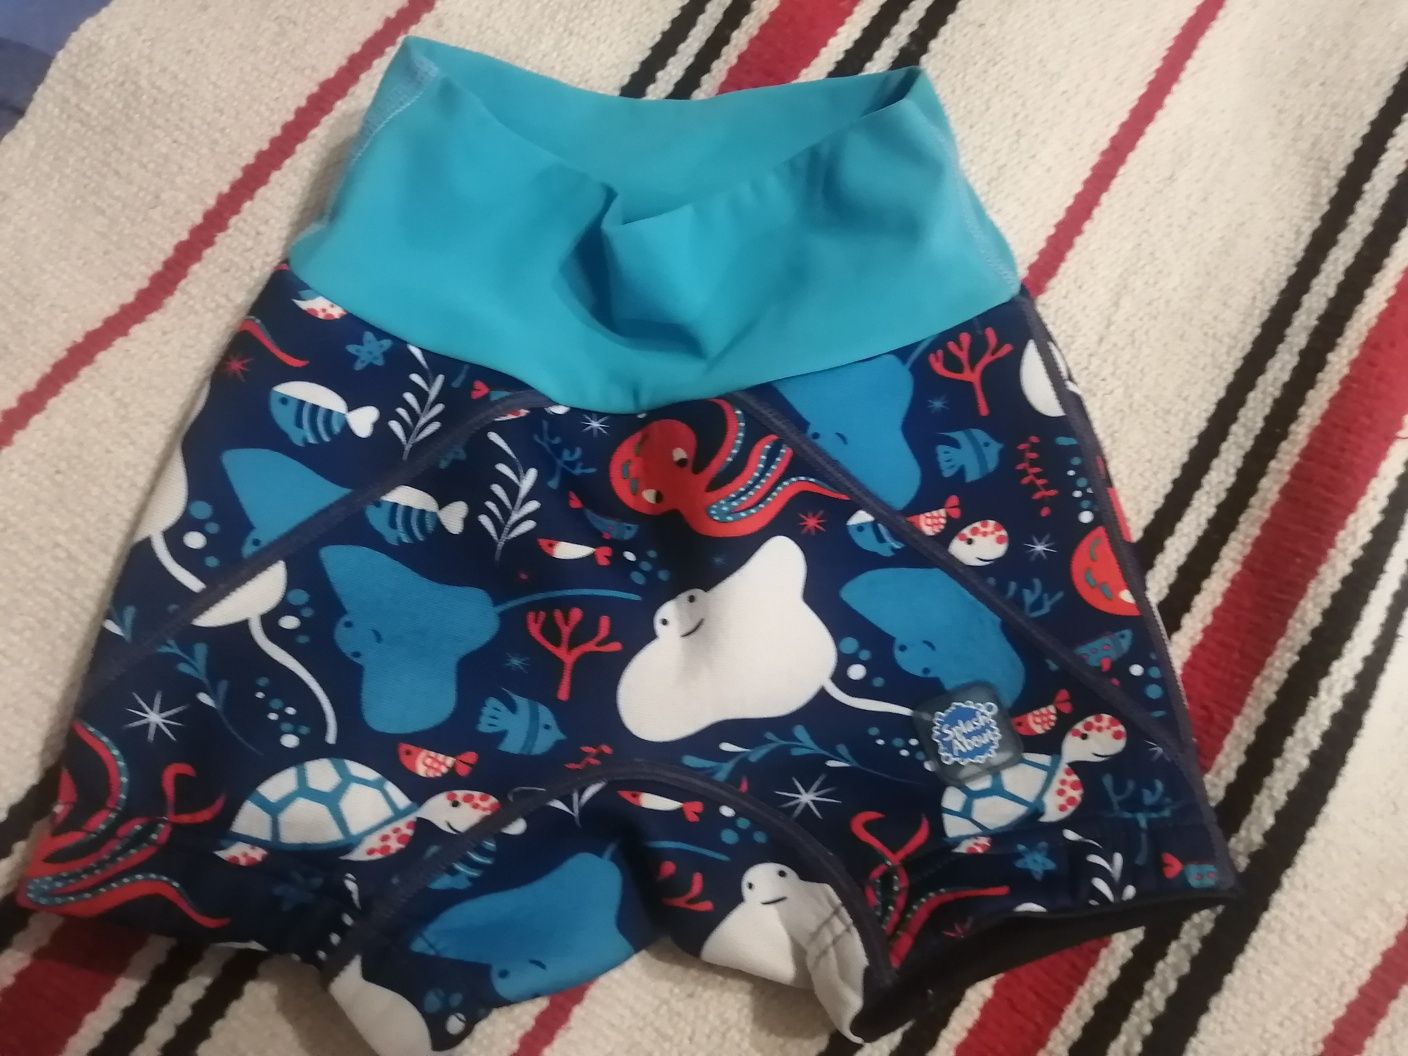 Гидрошорты-подгузник для плаванья Splash aboutна мальчика 3-4 года